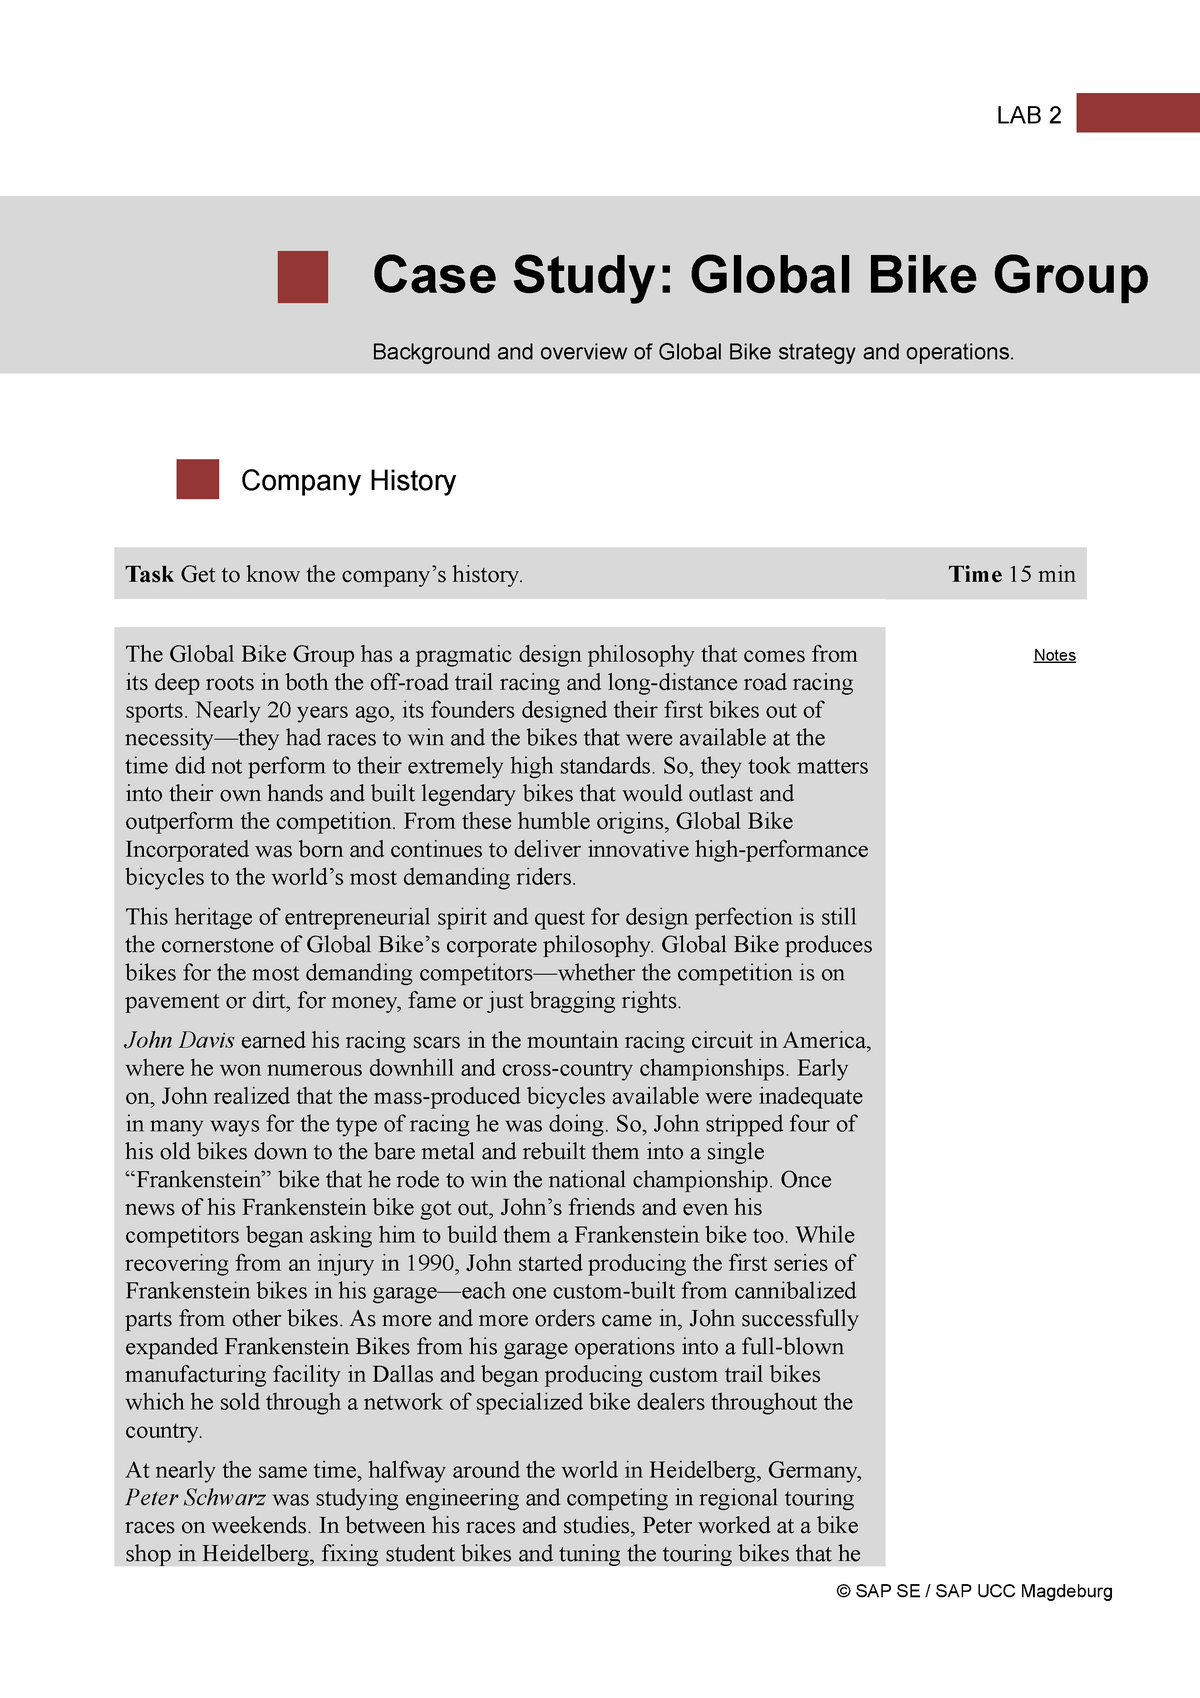 global bike group case study